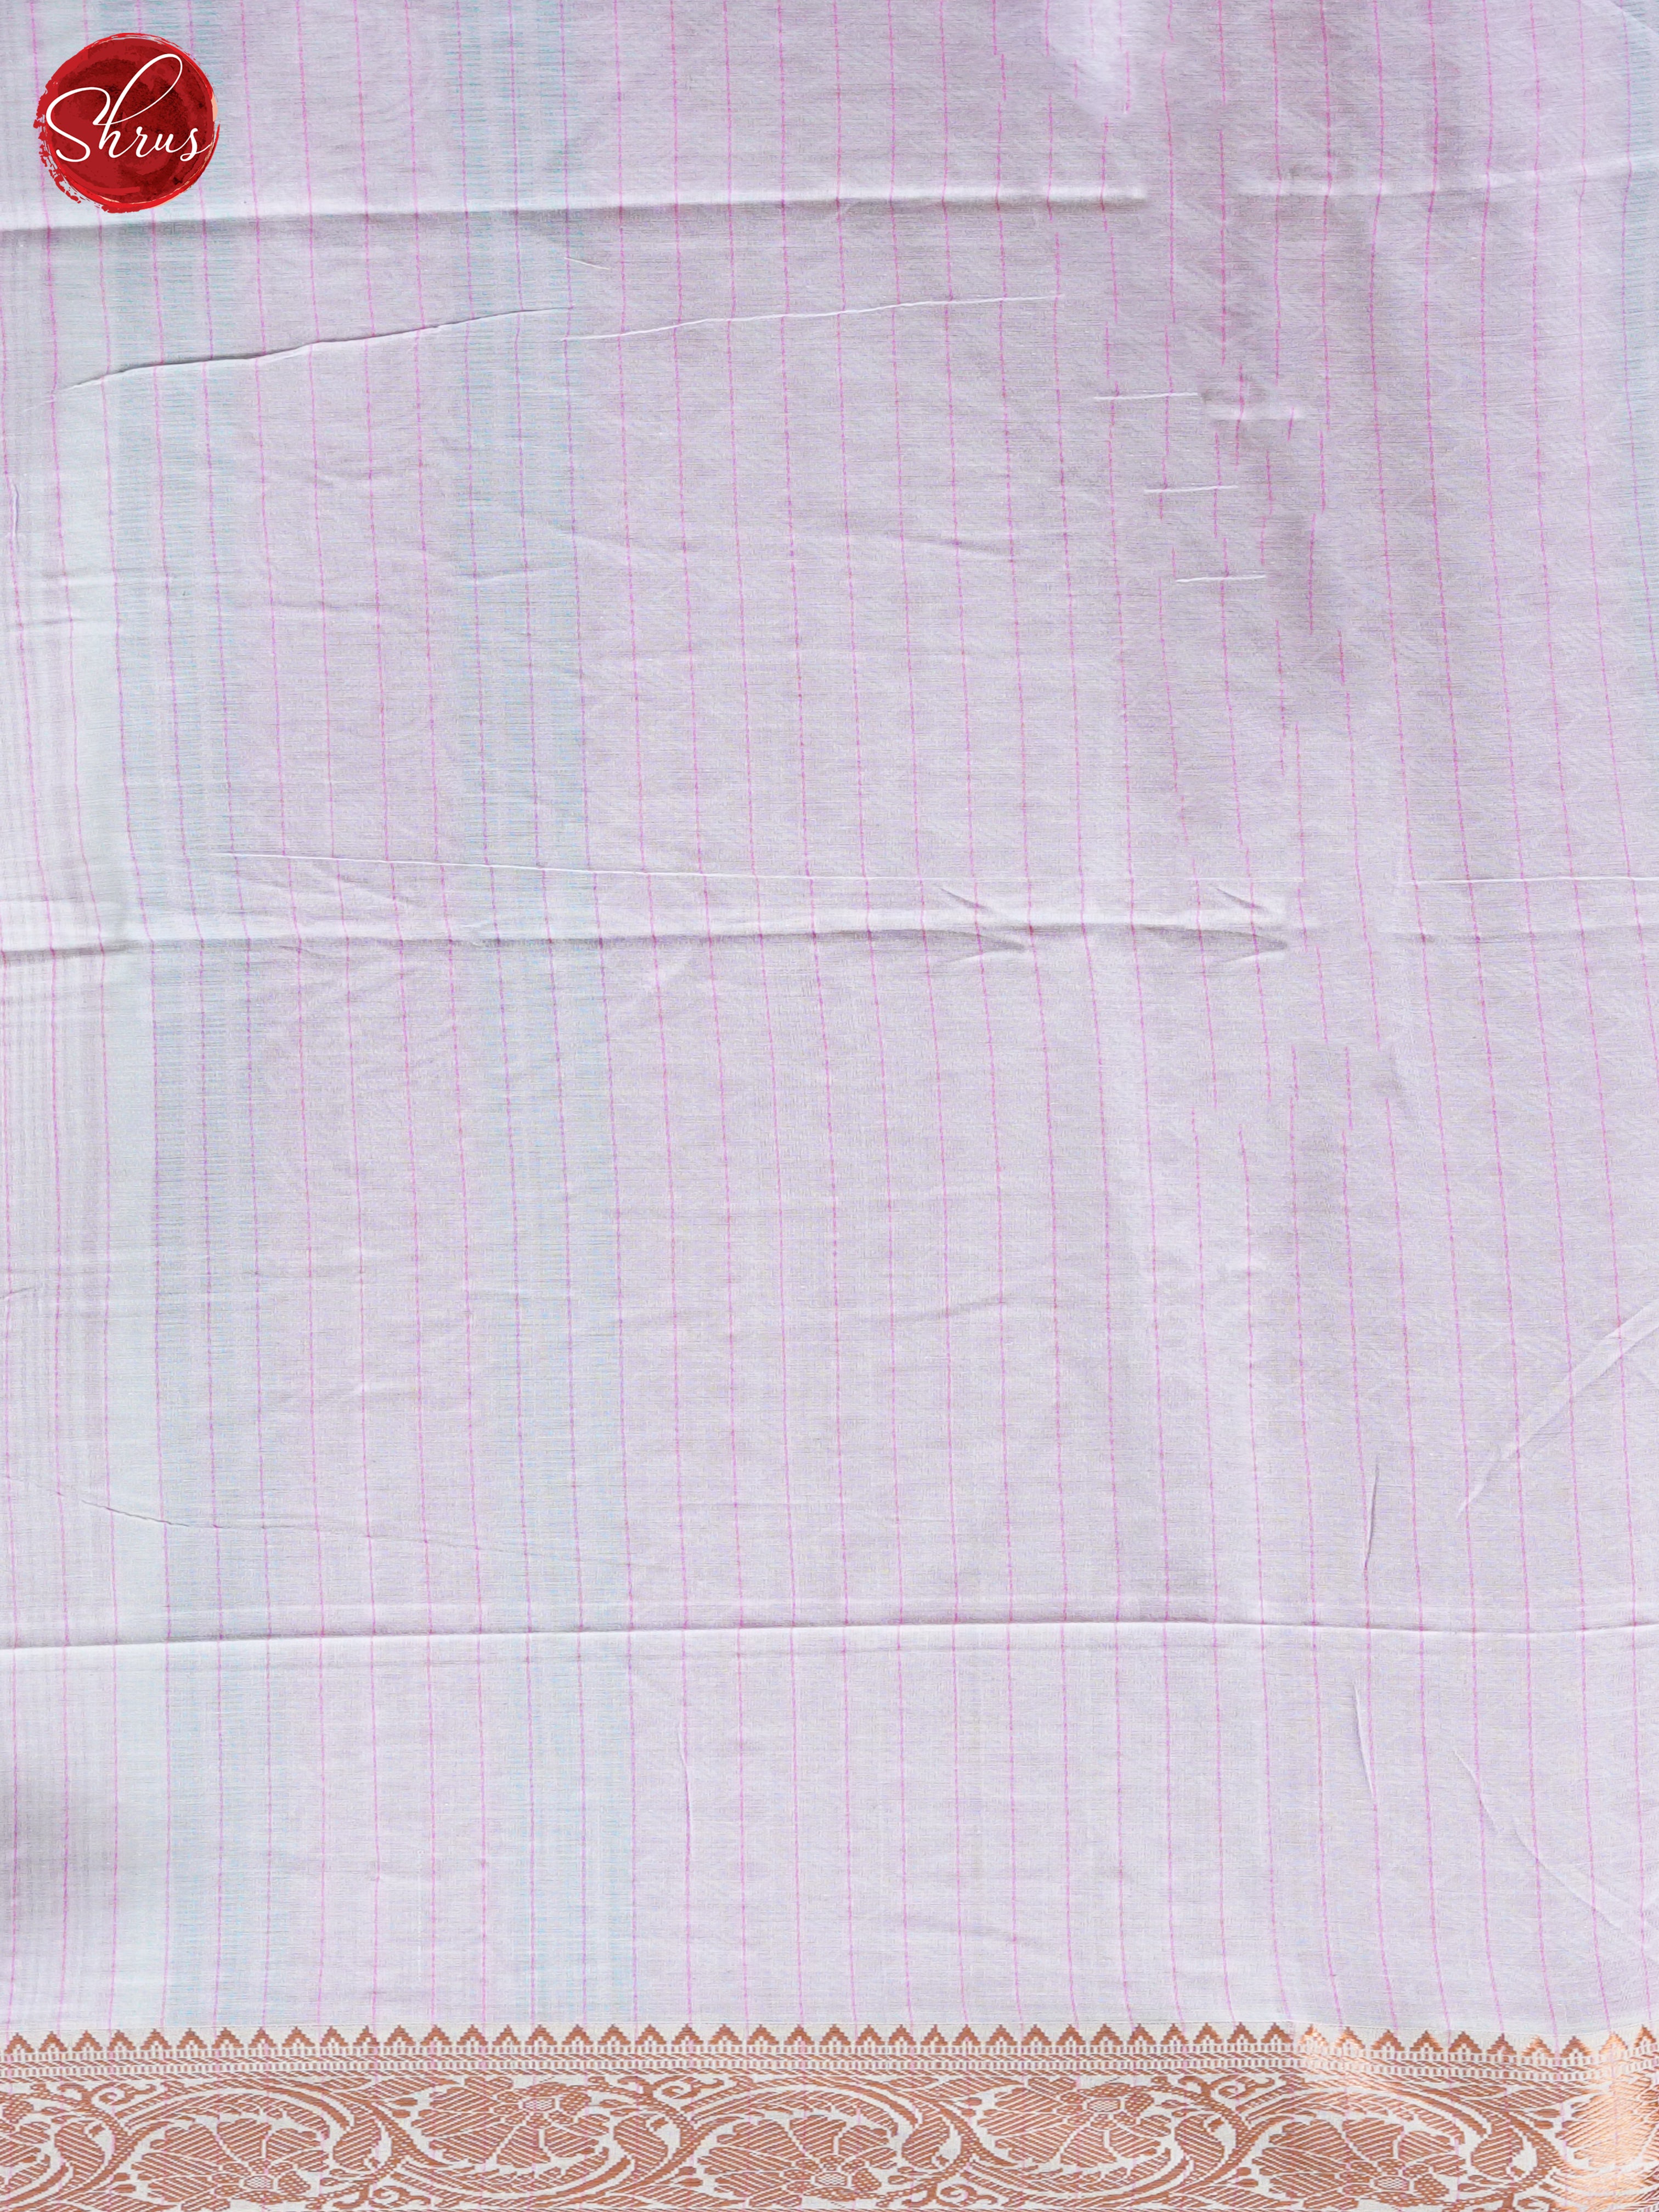 Grey & Pink - Bengal cotton Saree - Shop on ShrusEternity.com